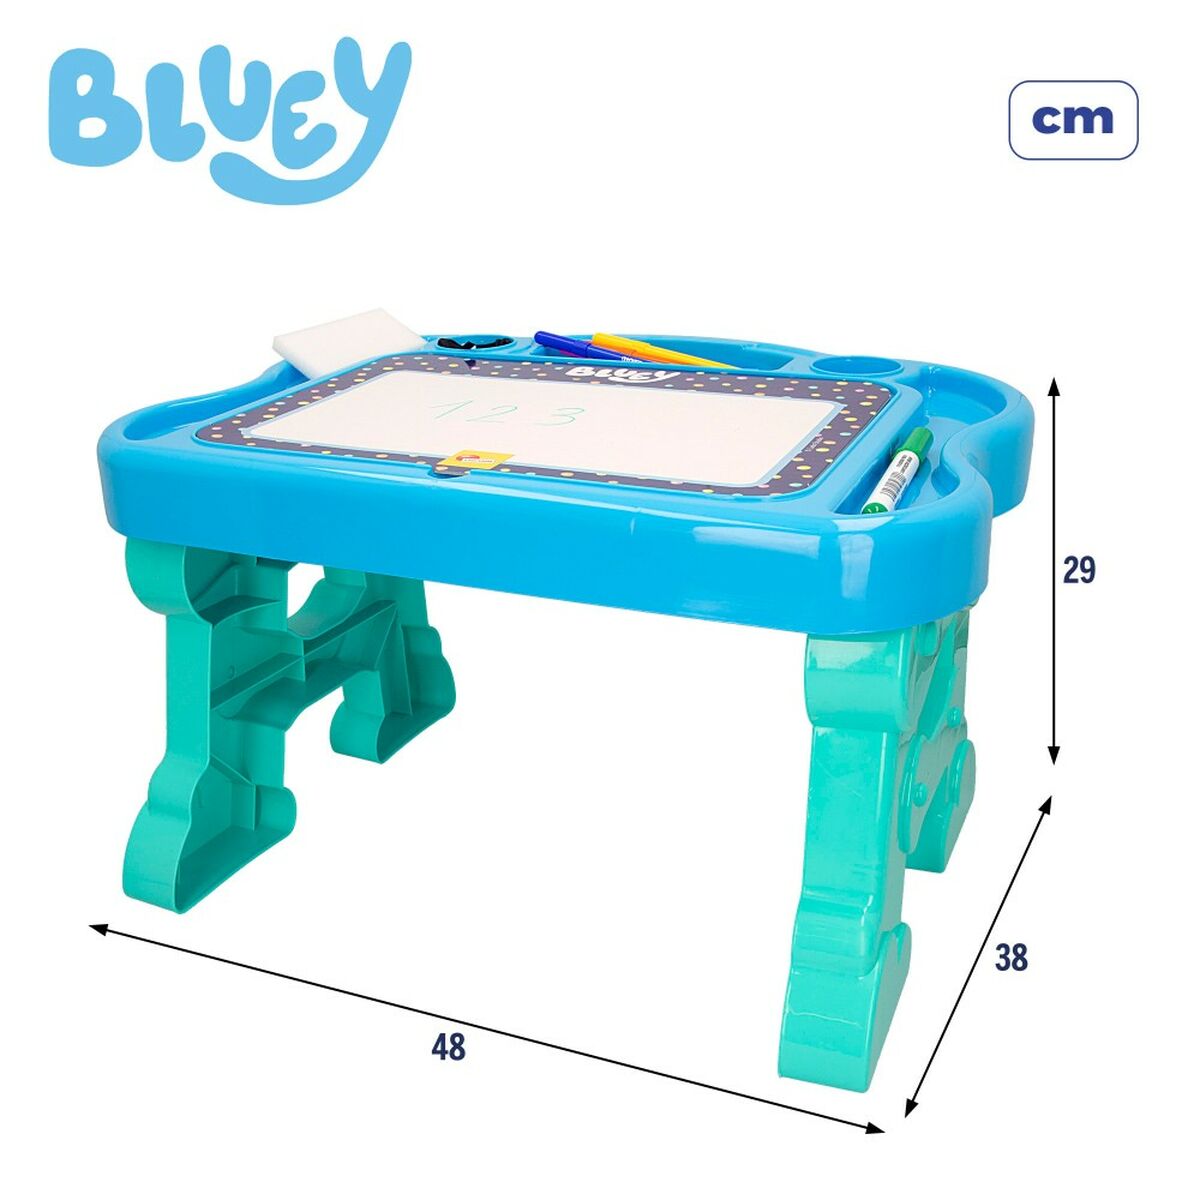 3D-pussel Bluey Teckning 48 x 29 x 38 cm (6 antal)-Leksaker och spel, Pussel och hjärngrupper-Bluey-peaceofhome.se